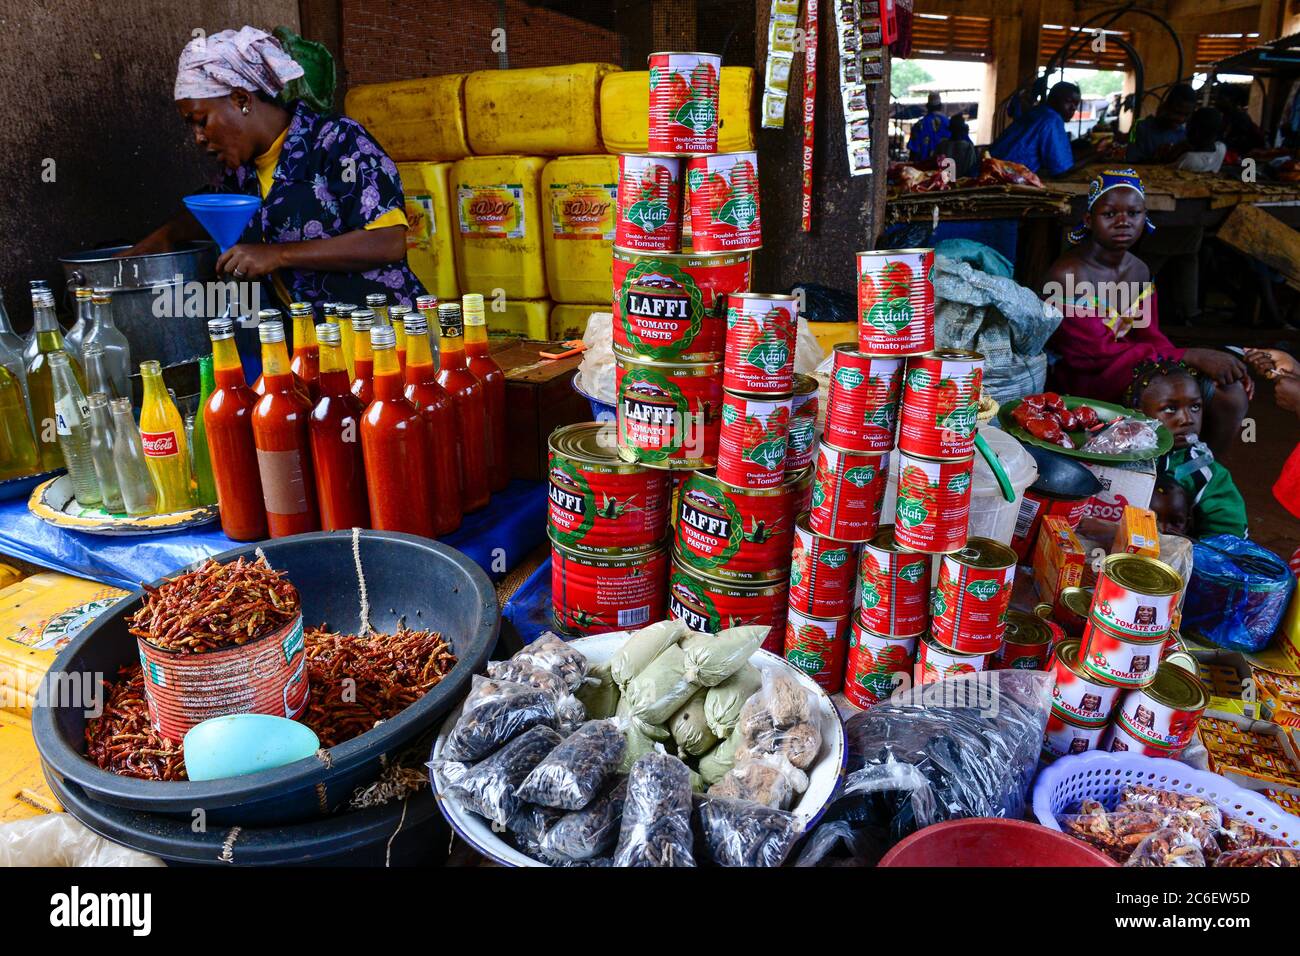 BURKINA FASO, Bobo Dioulasso, Grande MARCHE, sale of spices